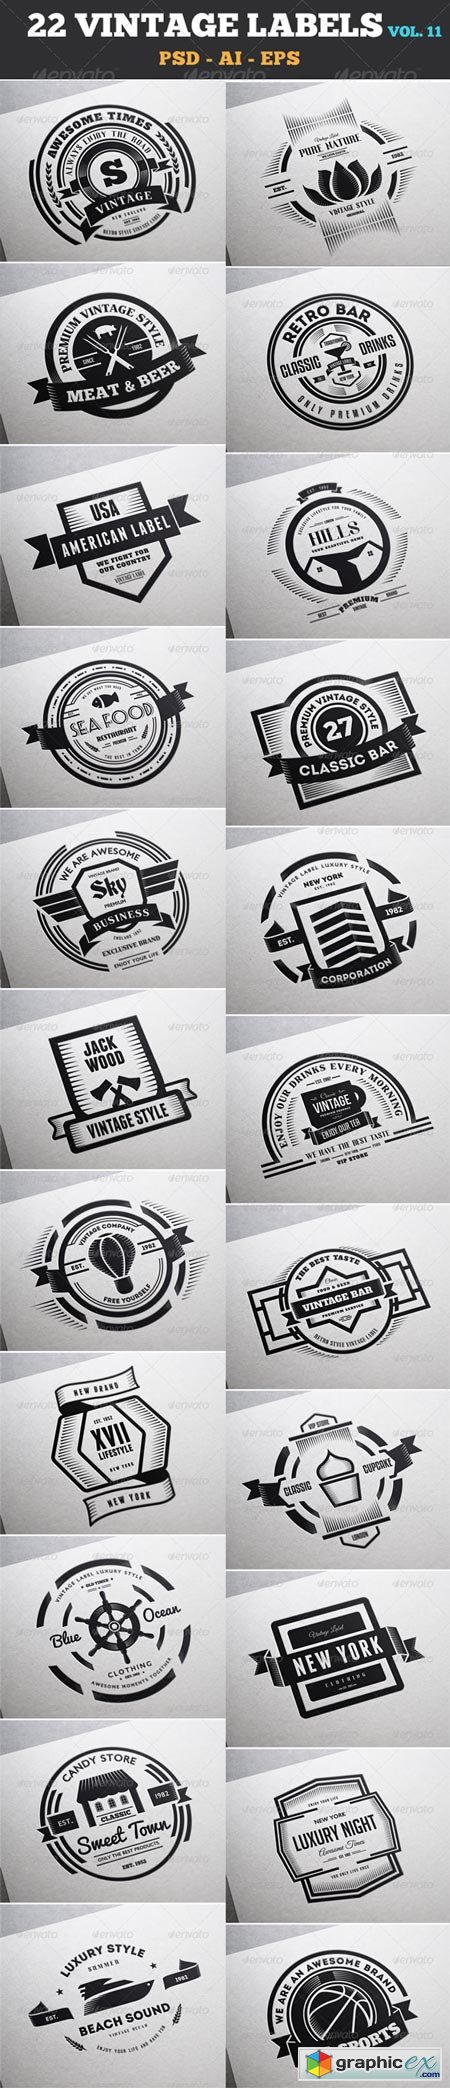 22 Vintage Labels & Badges Logos Insignias V11 7533985